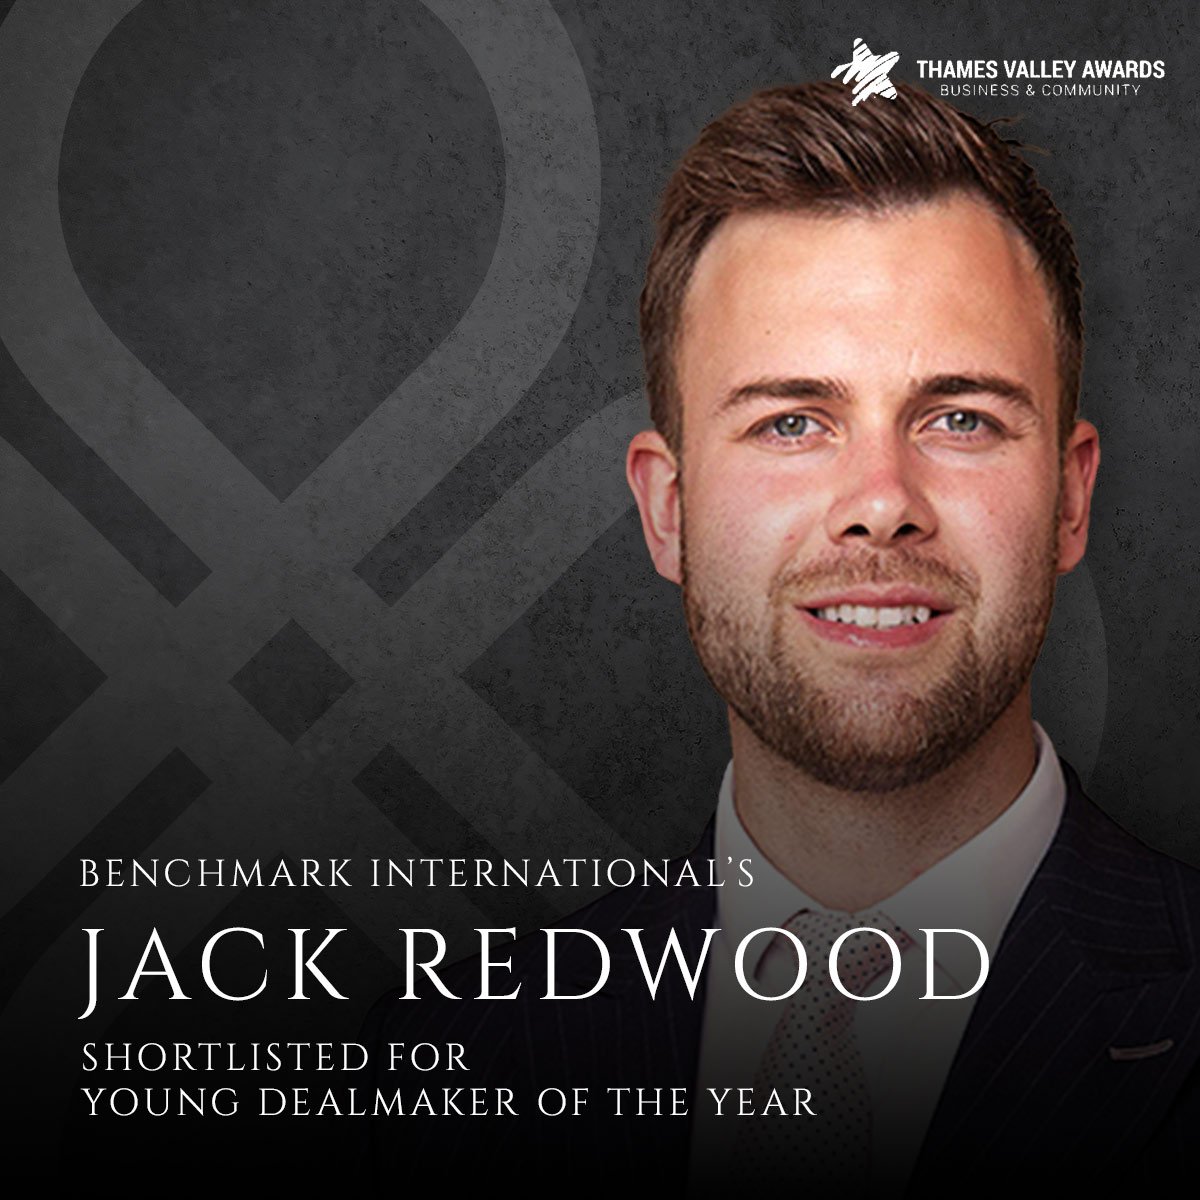 Jack Redwood shortlisted in Thames Valley Awards